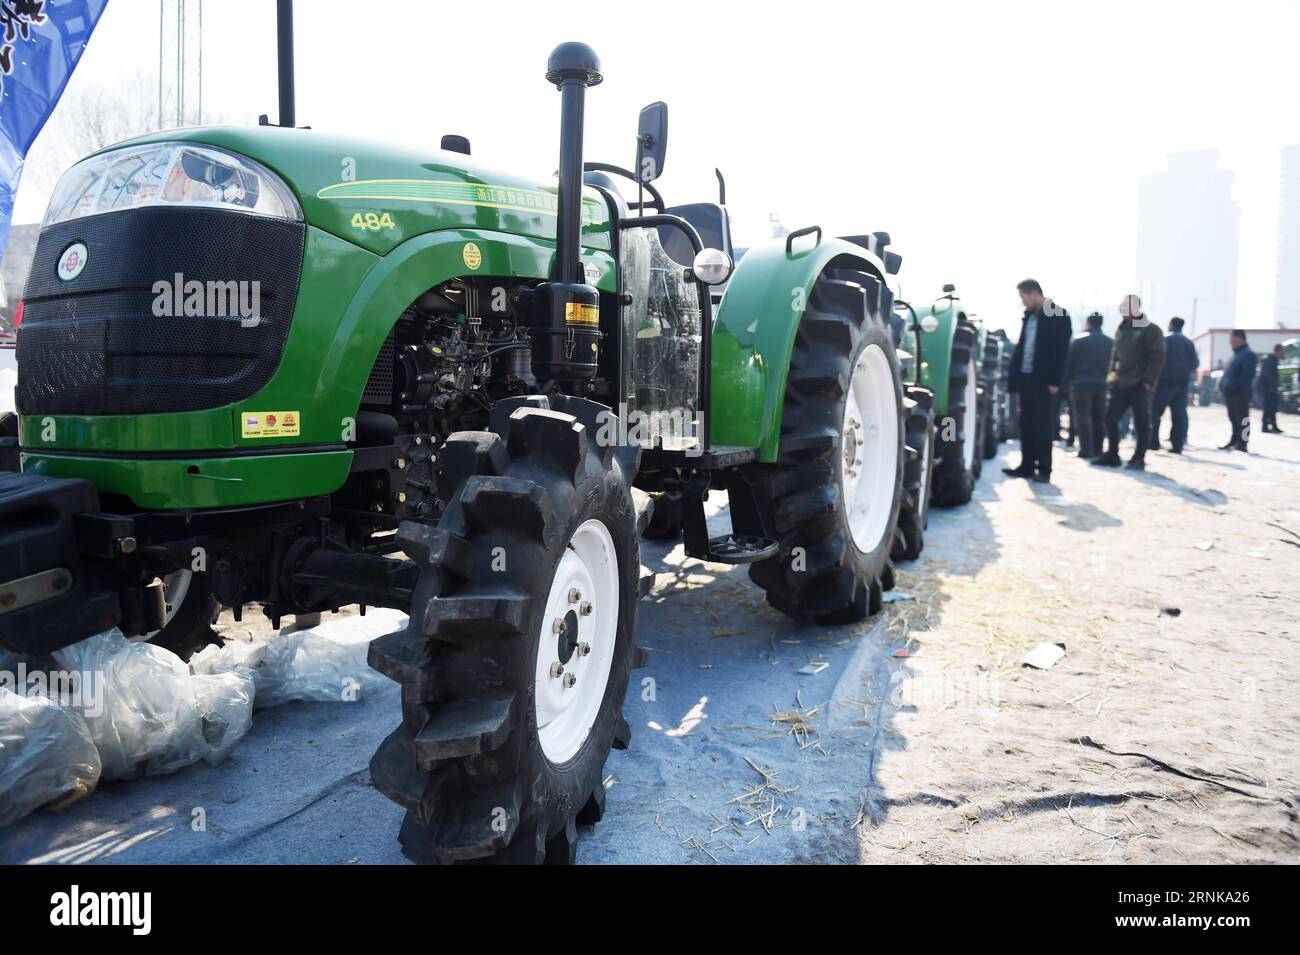 Traktorenmesse à Harbin, Chine (170316) -- HARBIN, le 16 mars 2017 -- des agriculteurs voient des machines agricoles sur un marché à Harbin, dans la province du Heilongjiang du nord-est de la Chine, le 16 mars 2017. Les agriculteurs du Heilongjiang ont commencé à choisir des machines agricoles sur le marché pour le labour printanier à venir.) (Yxb) CHINA-HARBIN-AGRICULTURAL MACHINERY(CN) WangxJianwei PUBLICATIONxNOTxINxCHN in Harbin China 170316 Harbin Mars 16 2017 agriculteurs Voir les machines agricoles SUR un marché à Harbin Nord-est de la Chine S Heilongjiang province Mars 16 2017 les agriculteurs à Heilongjiang ont commencé à choisir la machinerie agricole Banque D'Images